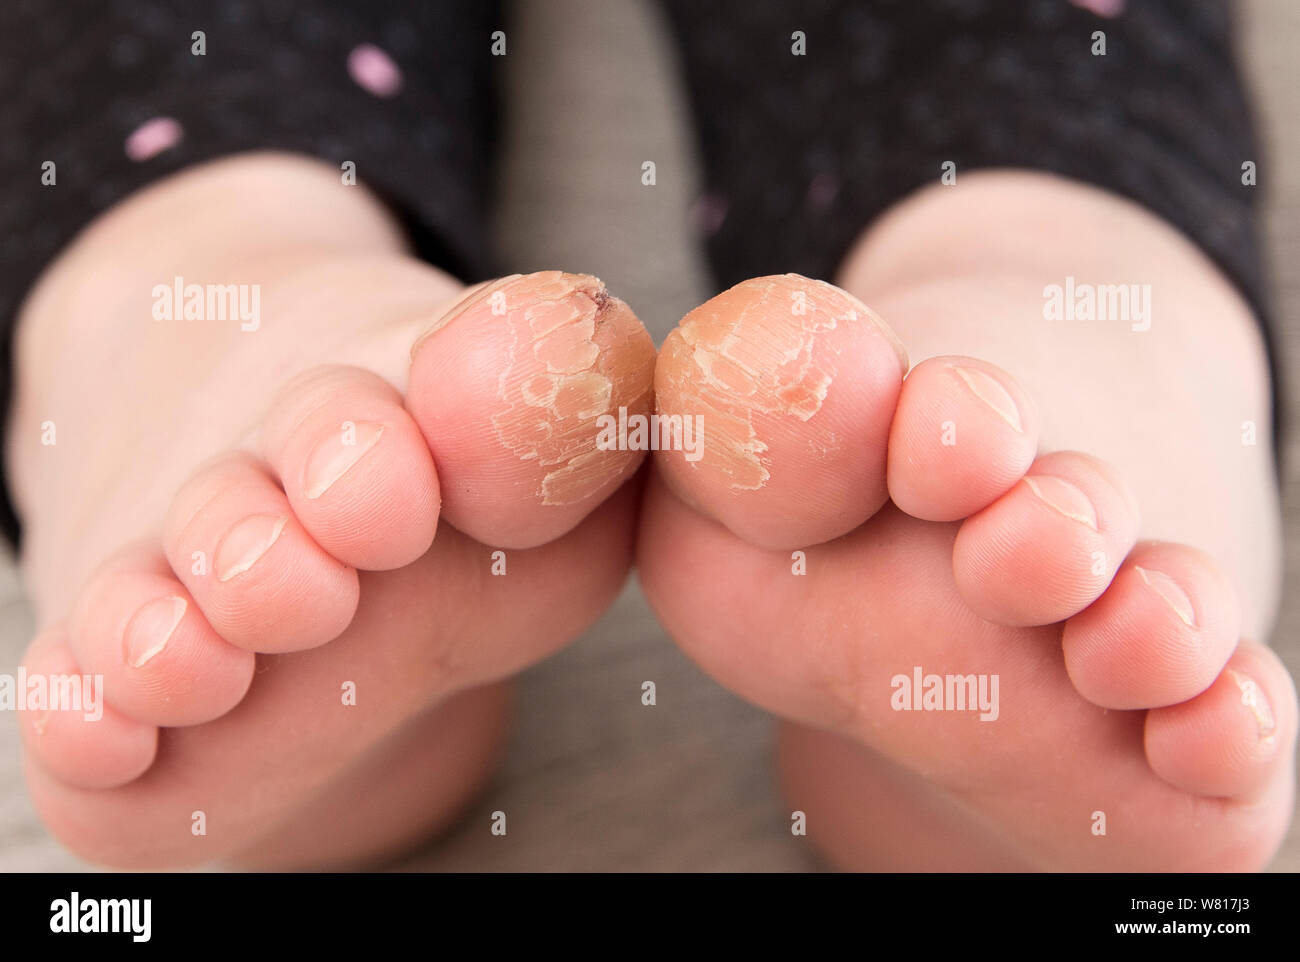 Vista cercana de 4 años de edad chica con grietas en sus dedos gordos de los pies. Concepto de mala condición de la piel. Foto de stock